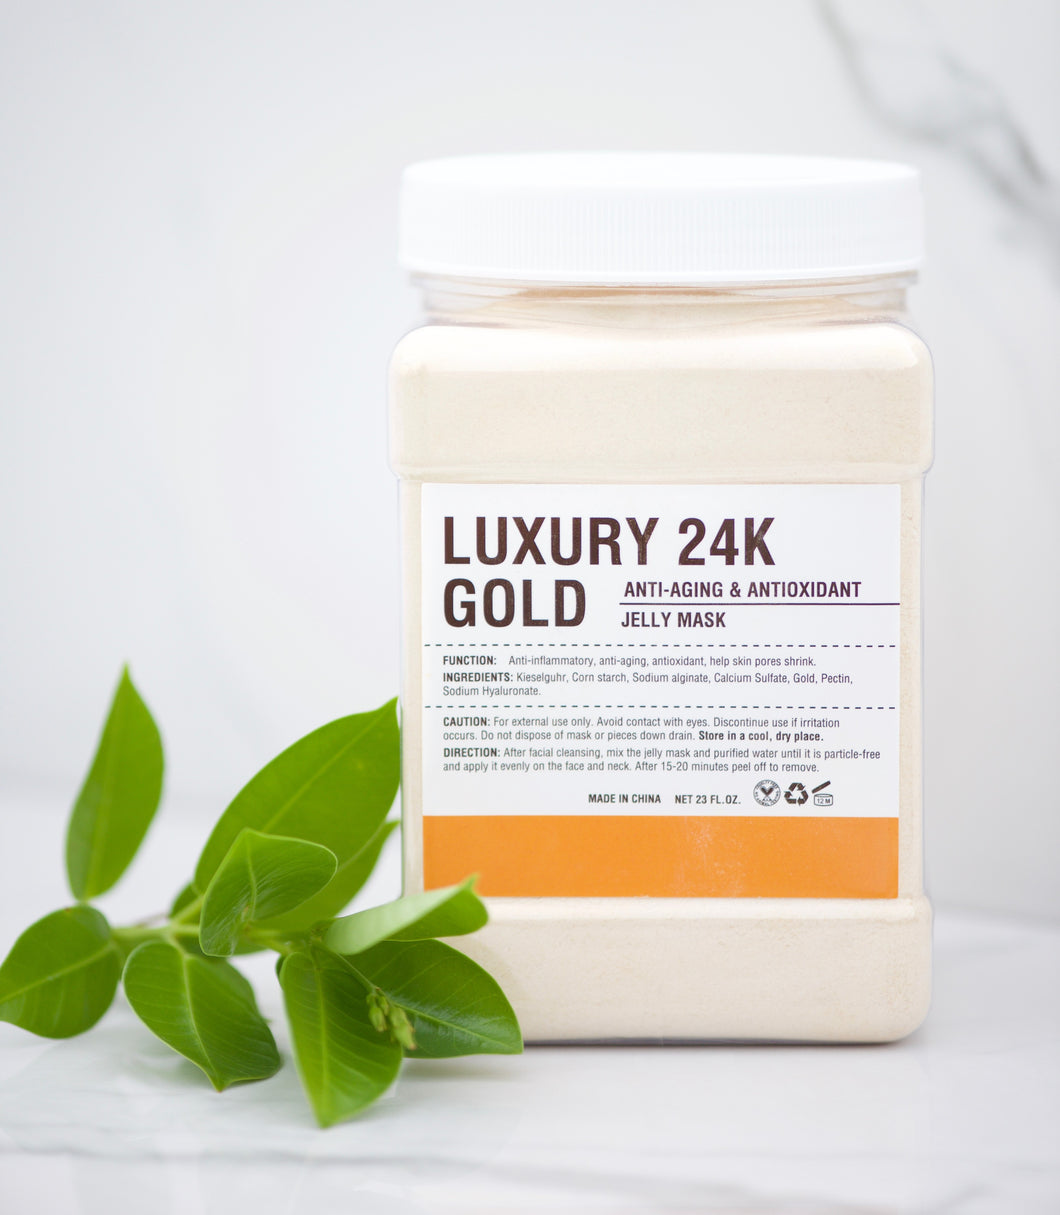 Jelly Mask - Face Mask - Luxury 24K Gold - Anti-Aging & Antioxidant